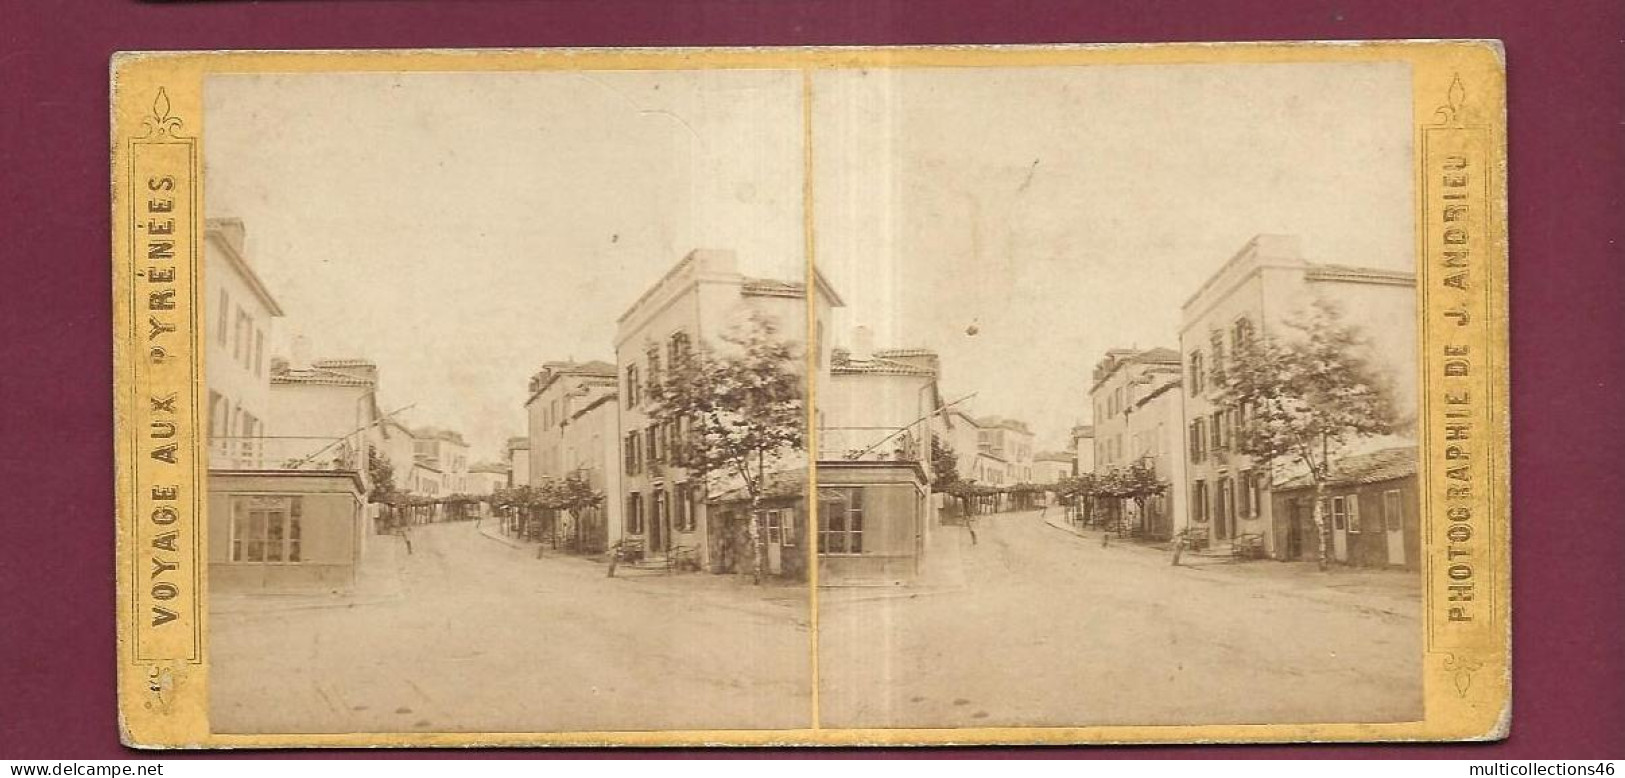 190424 - PHOTO STEREO PAPIER - VOYAGE AUX PYRENEES J ANDRIEU PARIS - BIARRITZ Rue Du Port Vieux - Stereoscopio